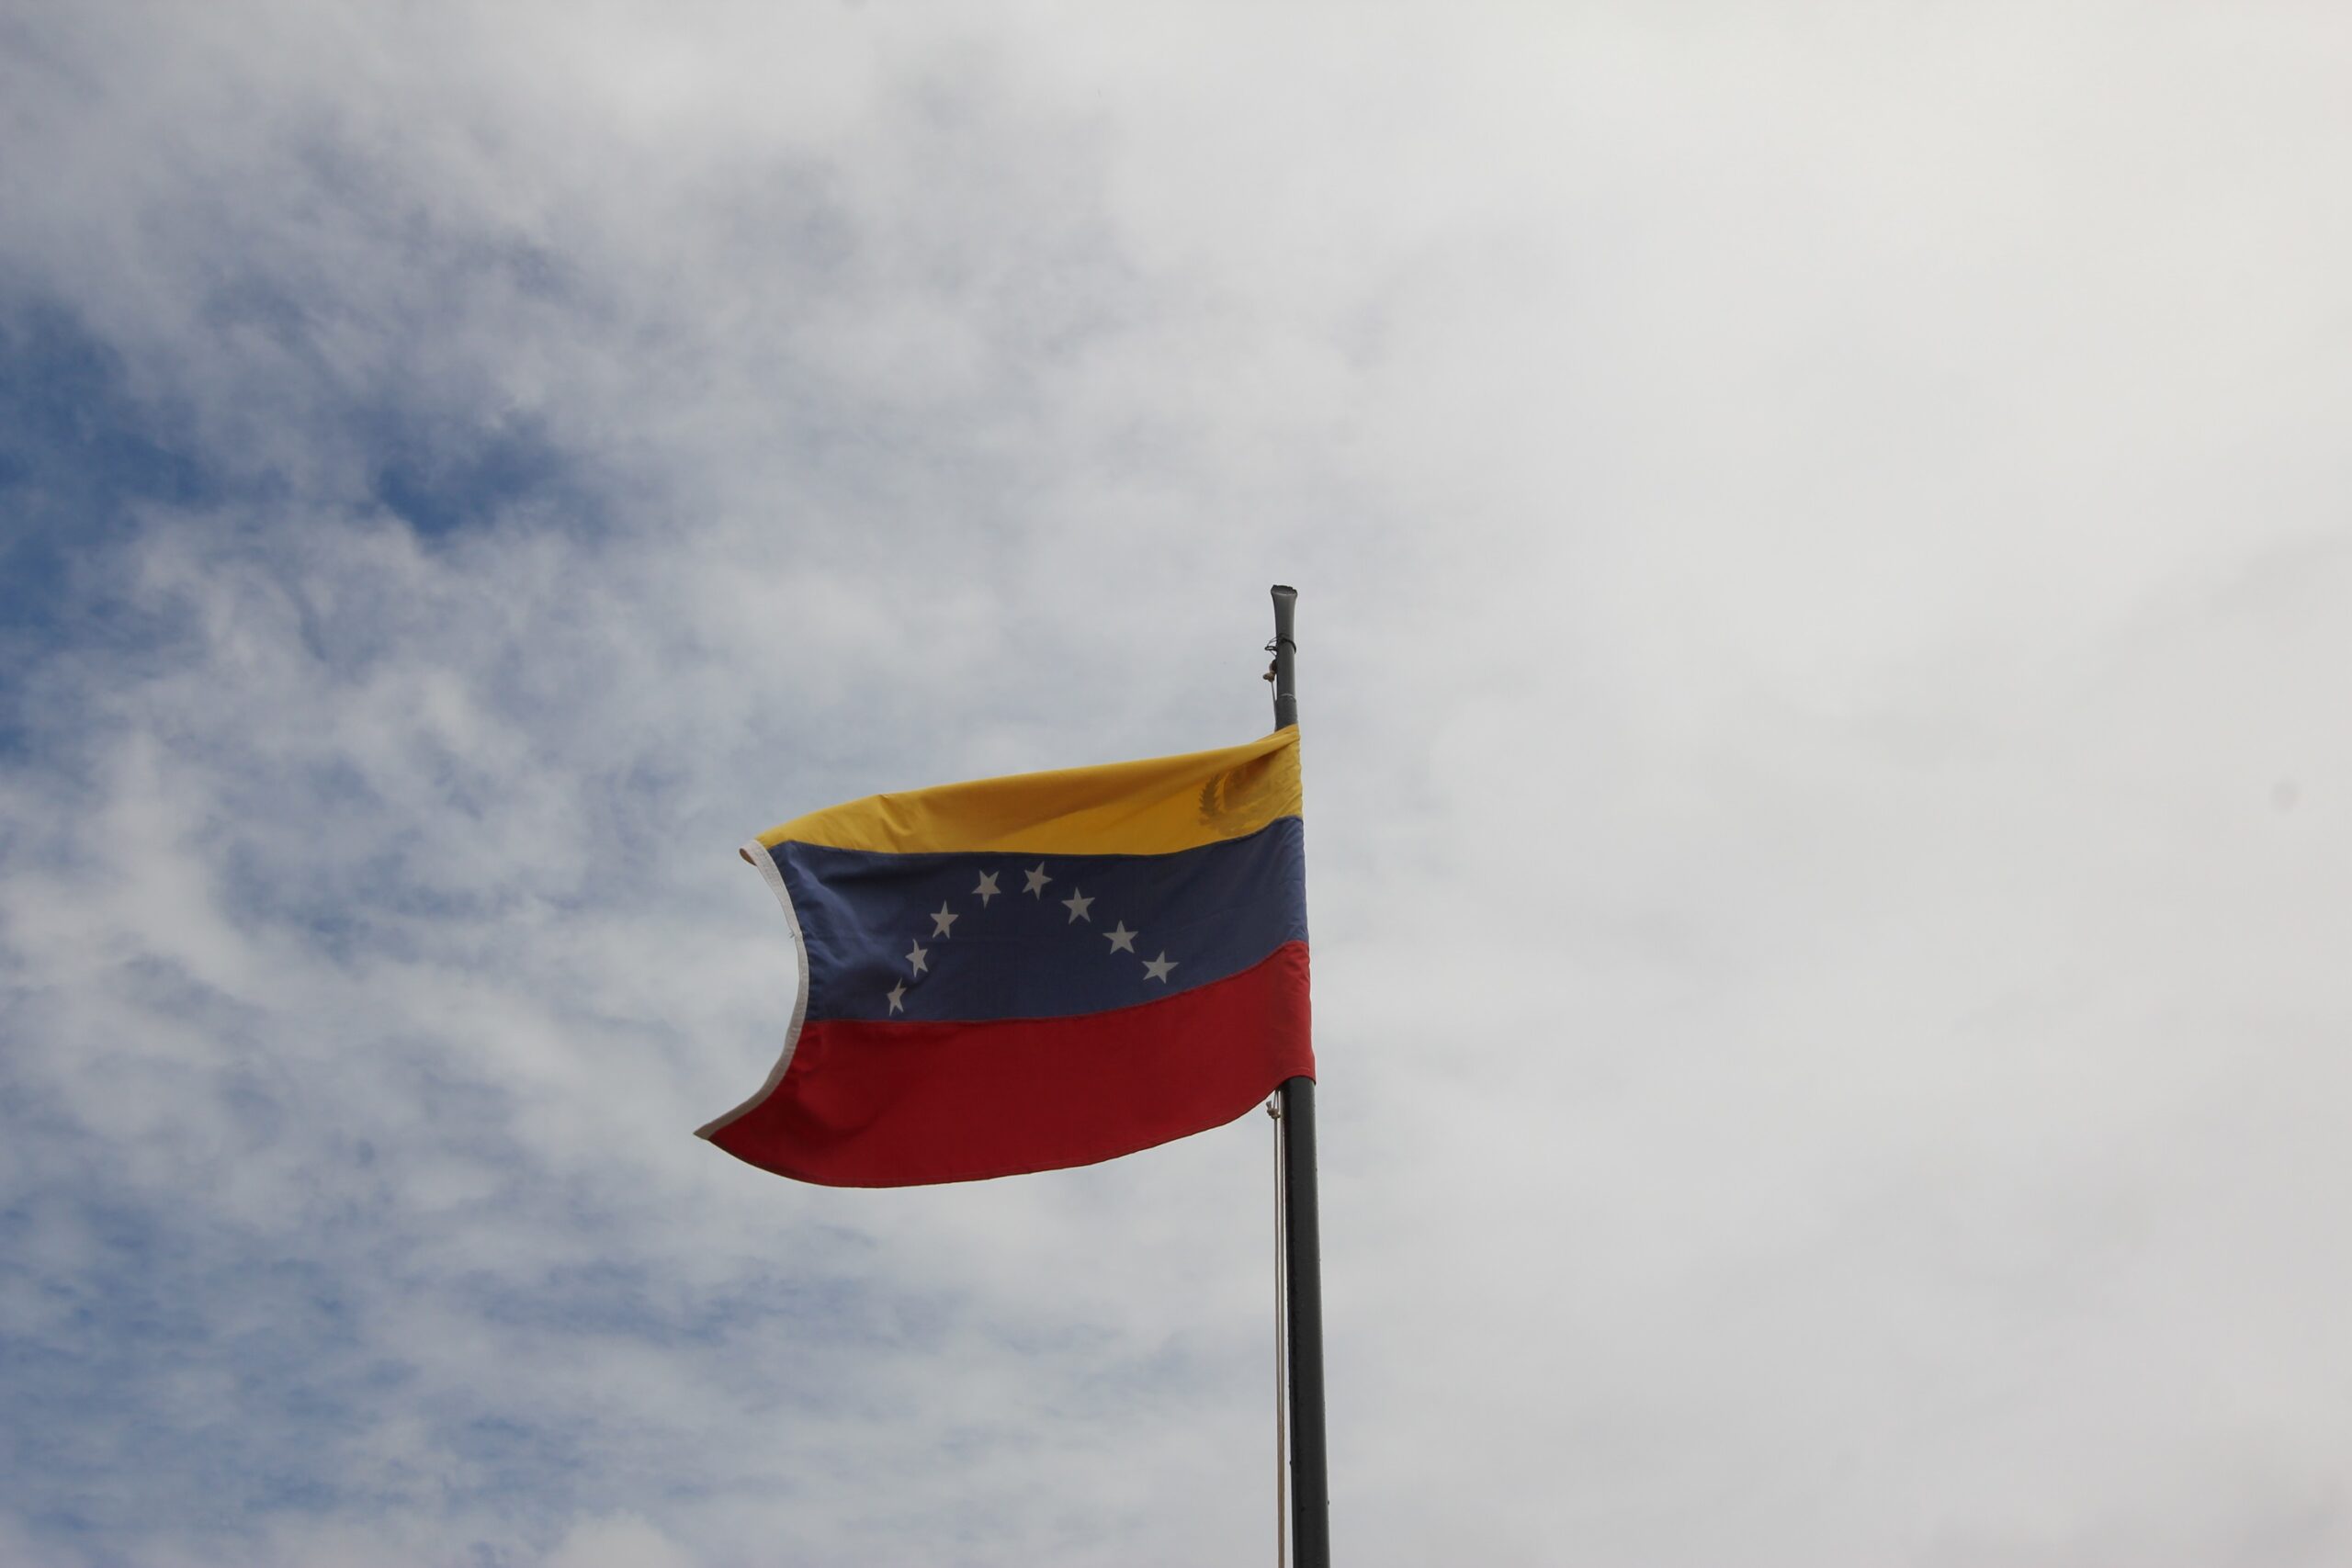 Eleições na Venezuela – o que esperar